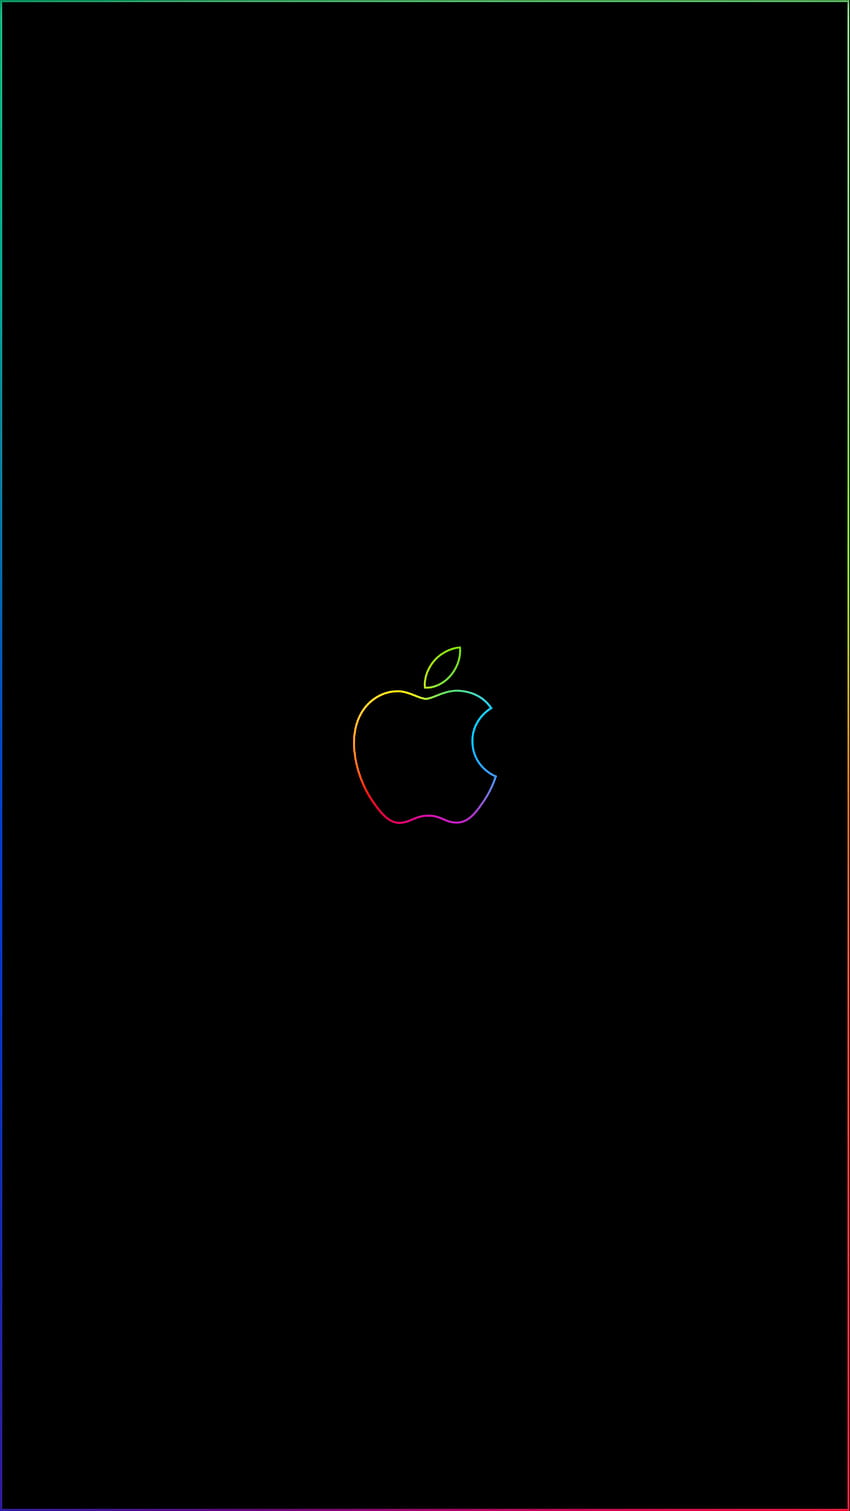 Borde del arco iris y logotipo de Apple iPhone Enlaces de Imgur: iPhone, iPhone con tema oscuro fondo de pantalla del teléfono